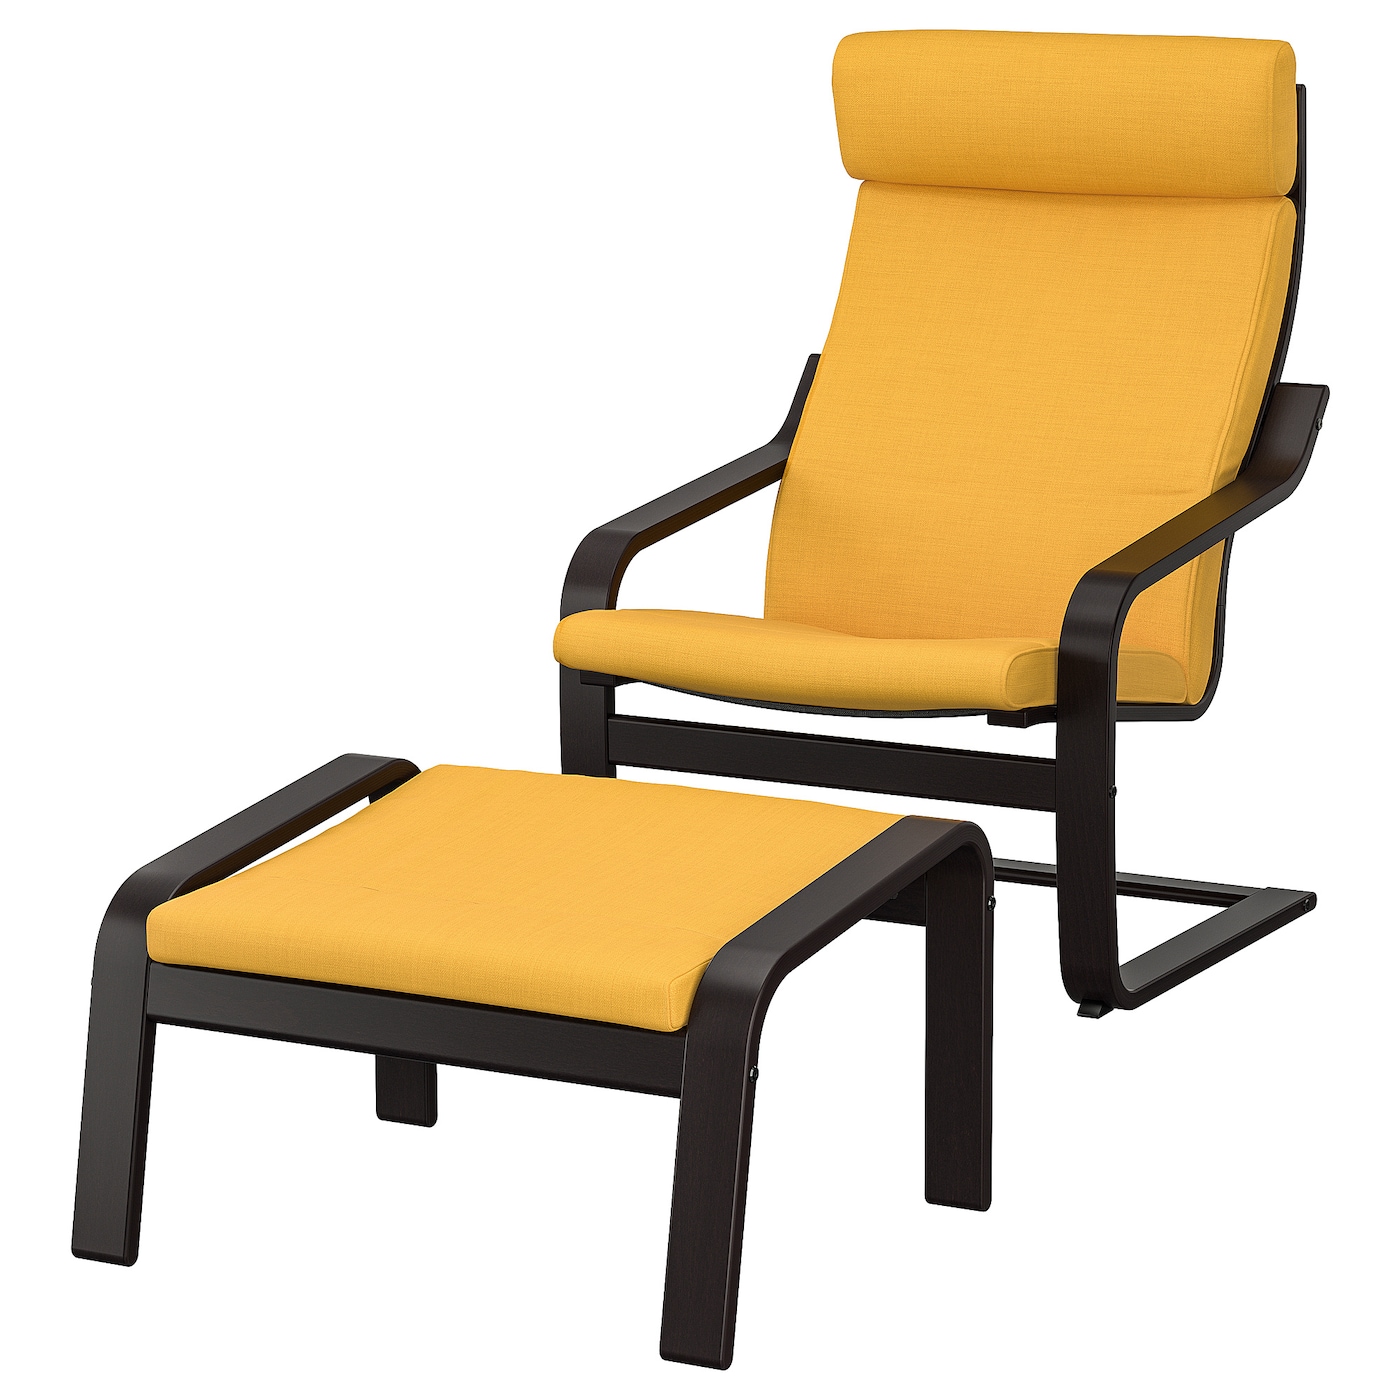 ПОЭНГ Кресло и подставка для ног, черно-коричневый/Скифтебо желтый POÄNG IKEA кресло уличное сатурн удлиненное из полнотелого бруса дпк на металлокаркасе